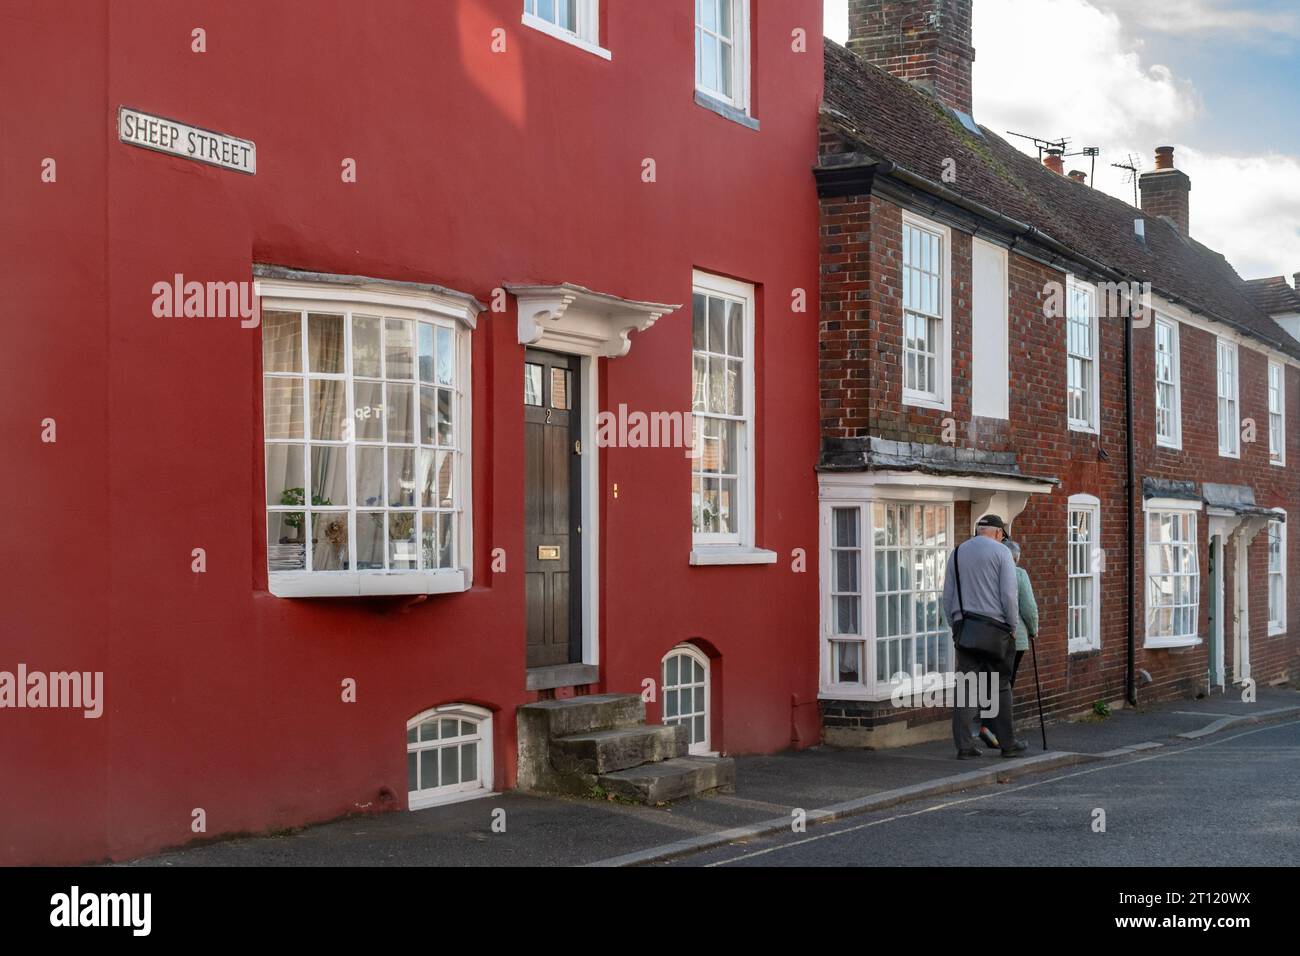 Charmants vieux cottages classés Grade II dans Sheep Street, Petersfield, Hampshire, Angleterre, Royaume-Uni. Chalet du début du 18e siècle, non 2, peint en rouge Banque D'Images